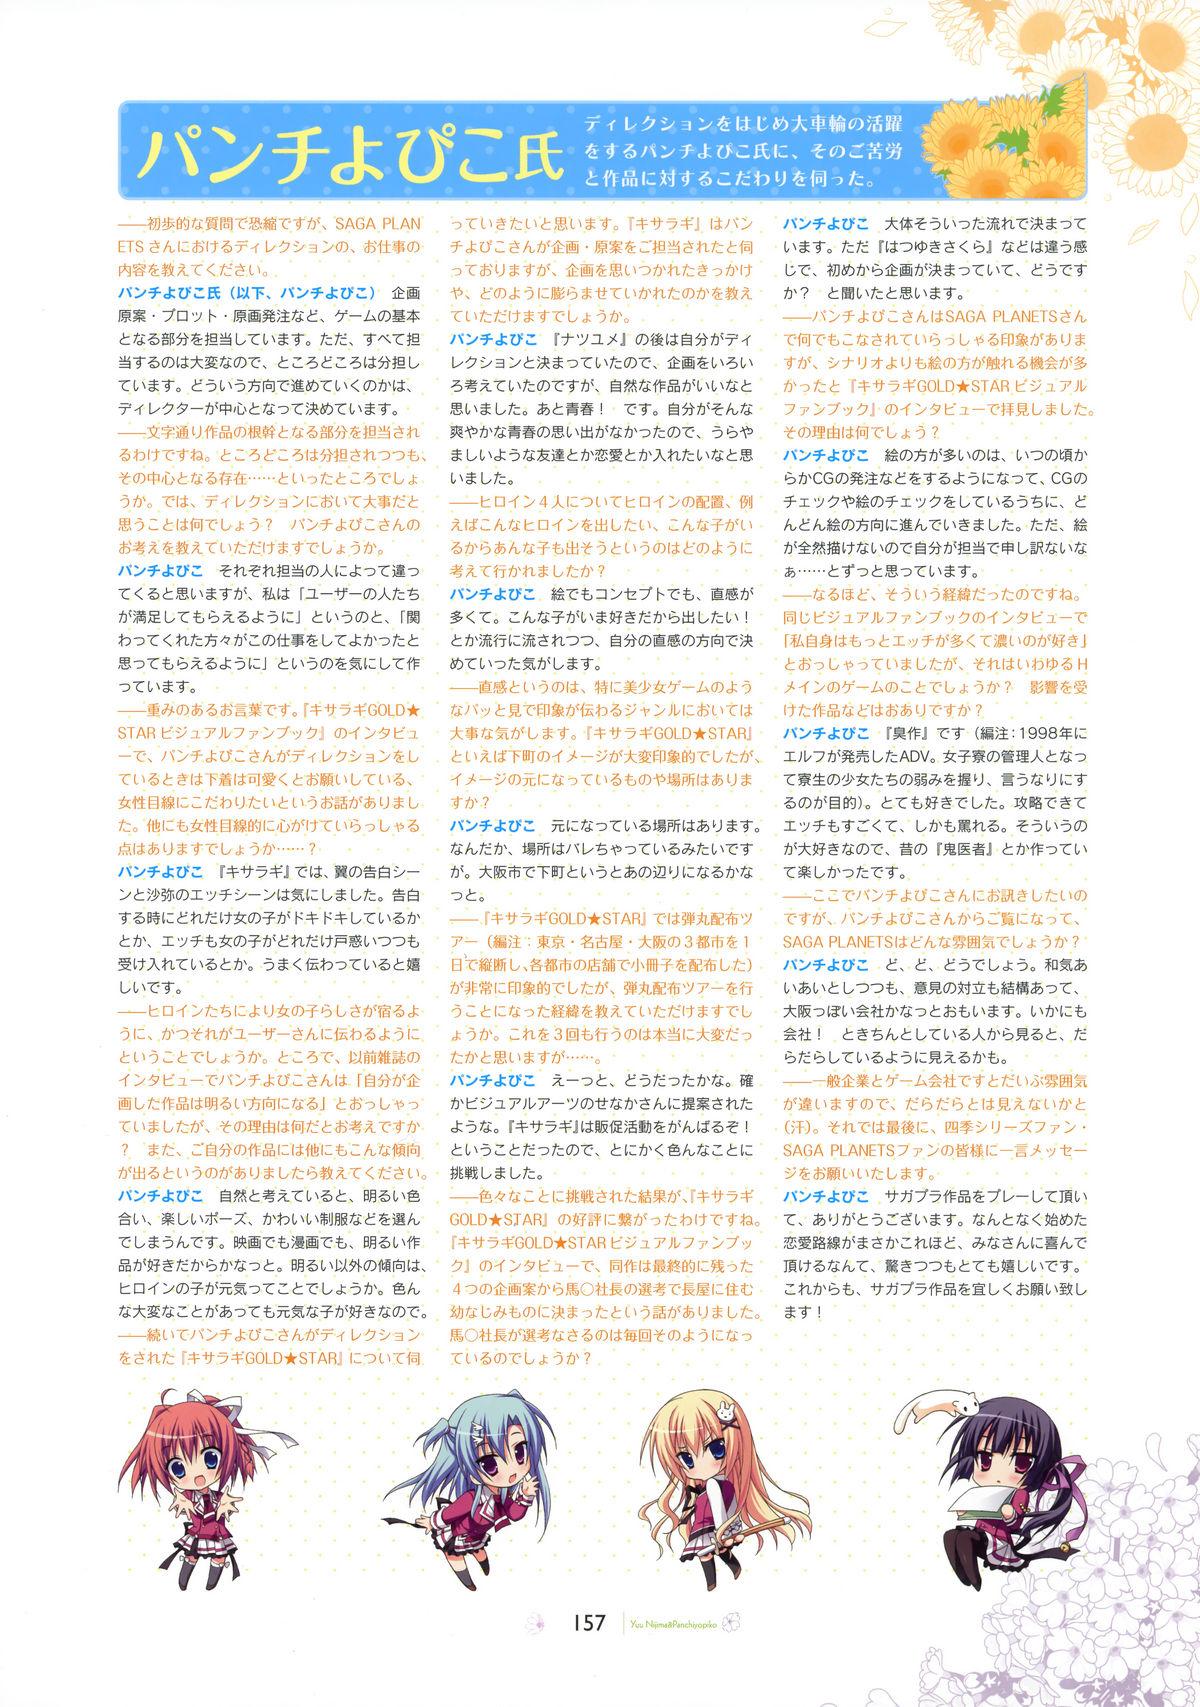 SAGA PLANETS Shiki Series All Season Art Works 157